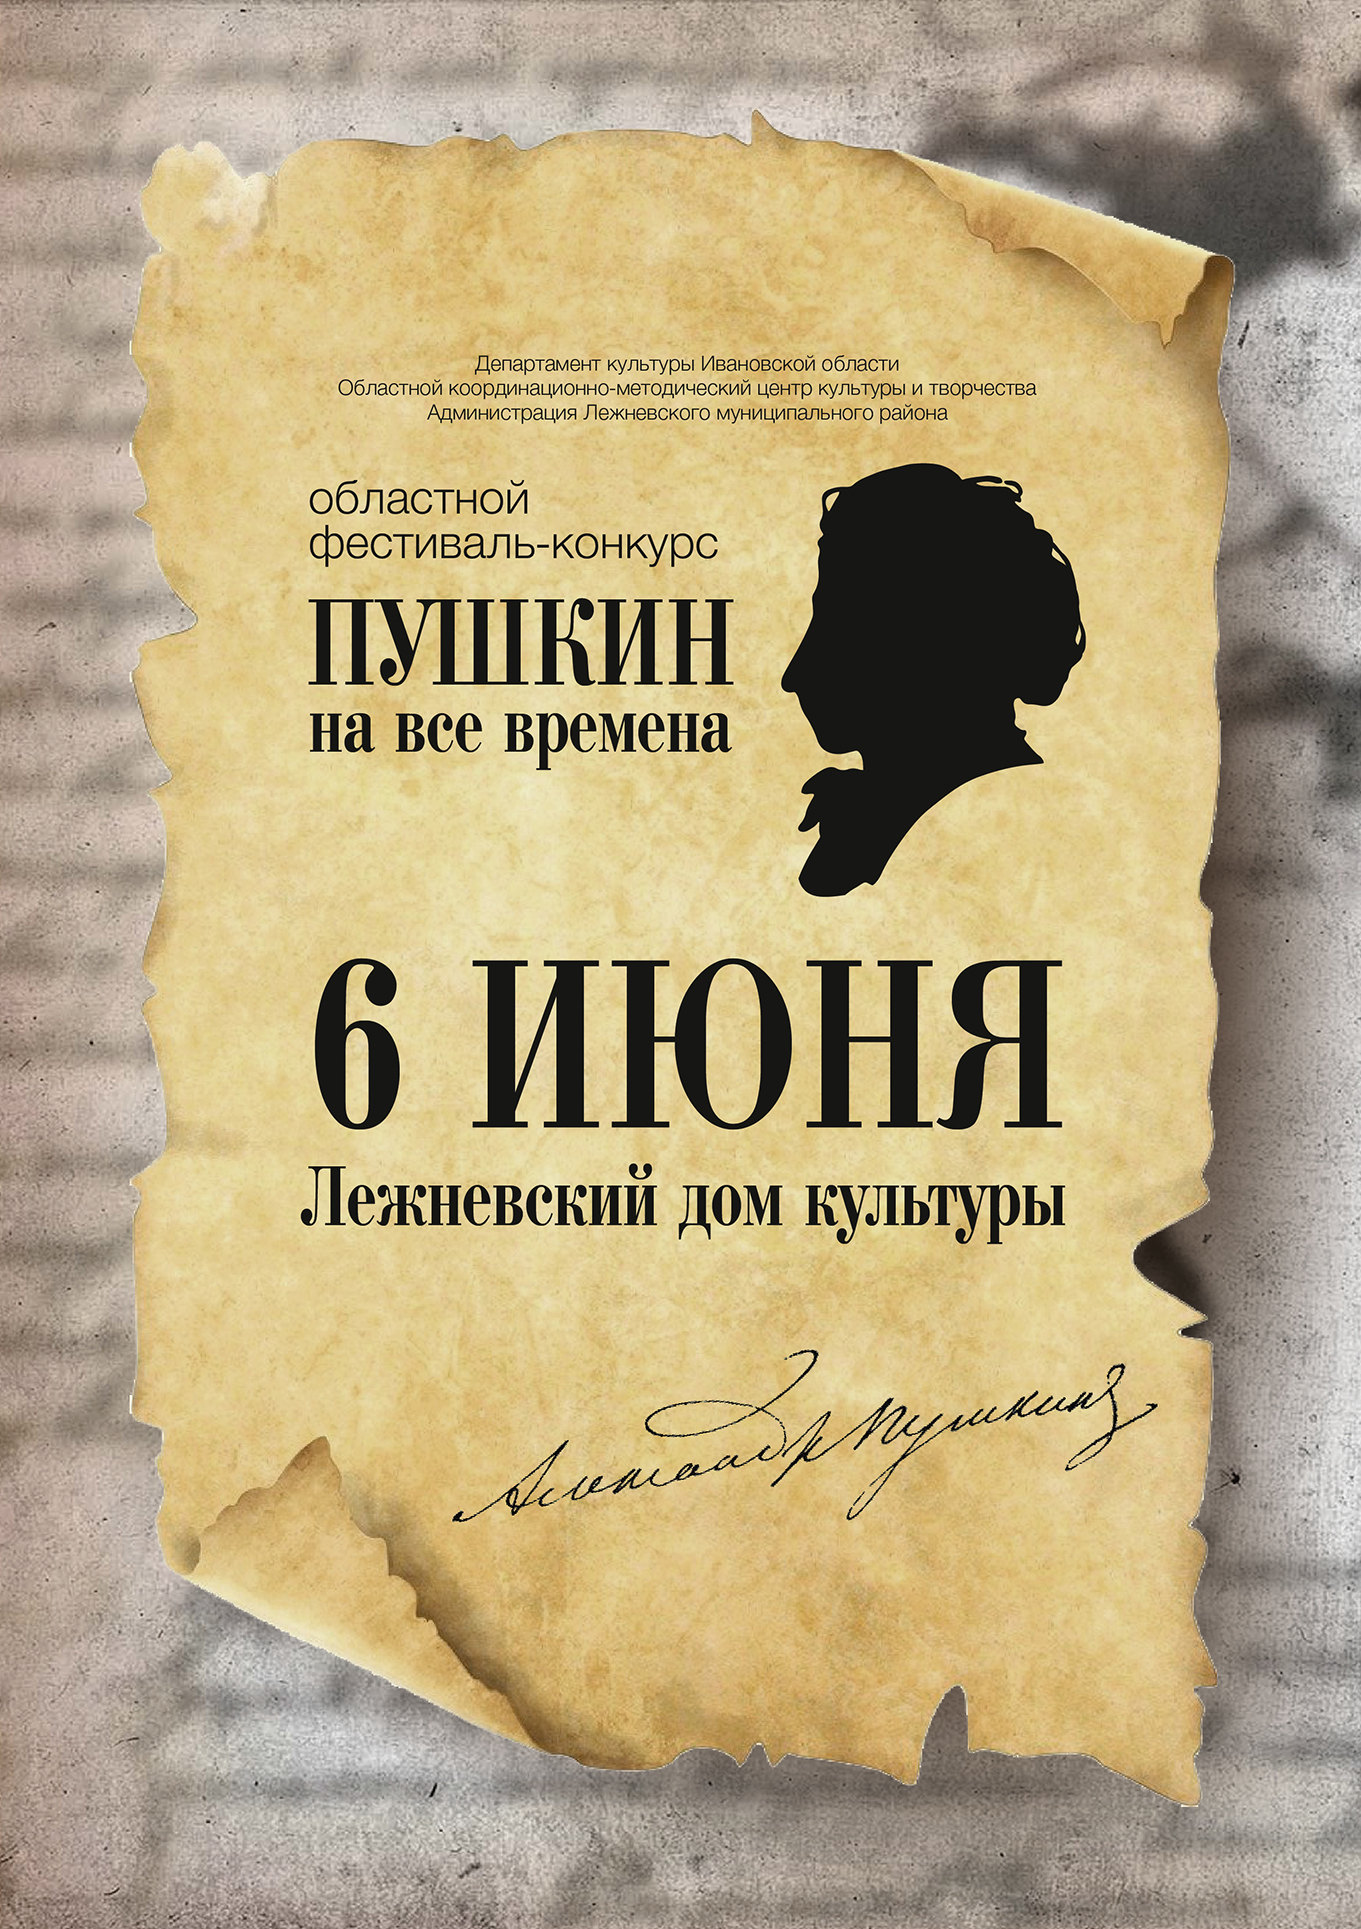 Открыт прием заявок на областной фестиваль-конкурс «Пушкин на все времена»